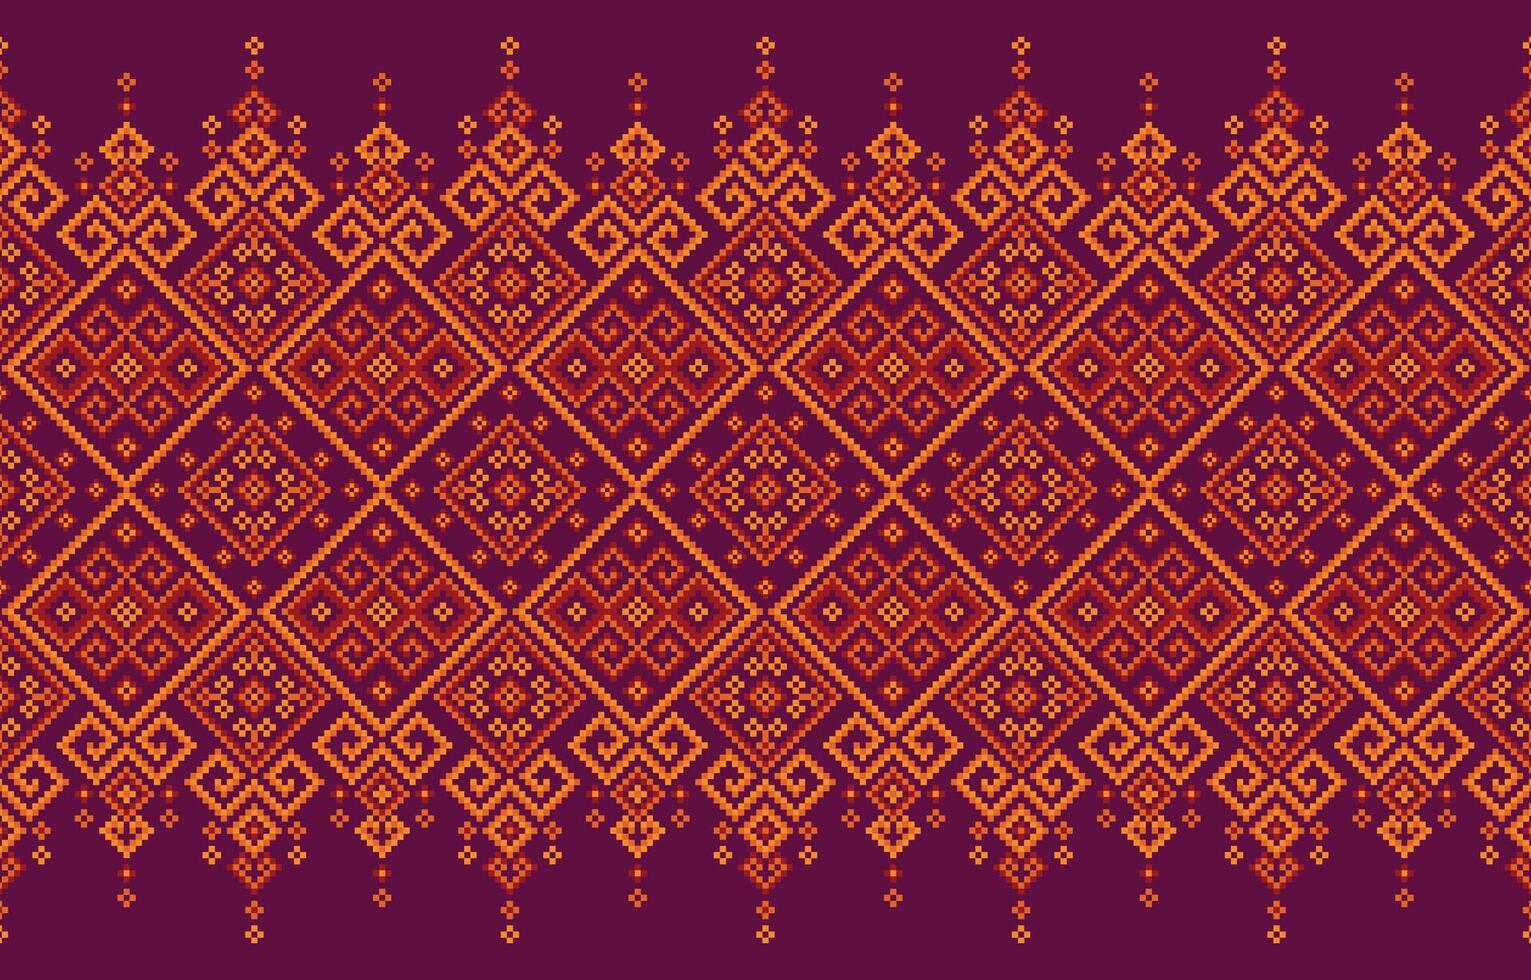 étnico geometría modelo retro textil ikat vector gráfico modelo hermosa antecedentes diseño por retro geométrico indio tela vistoso ornamento africano impresión azteca Punto de cruz cruzar alfombra.